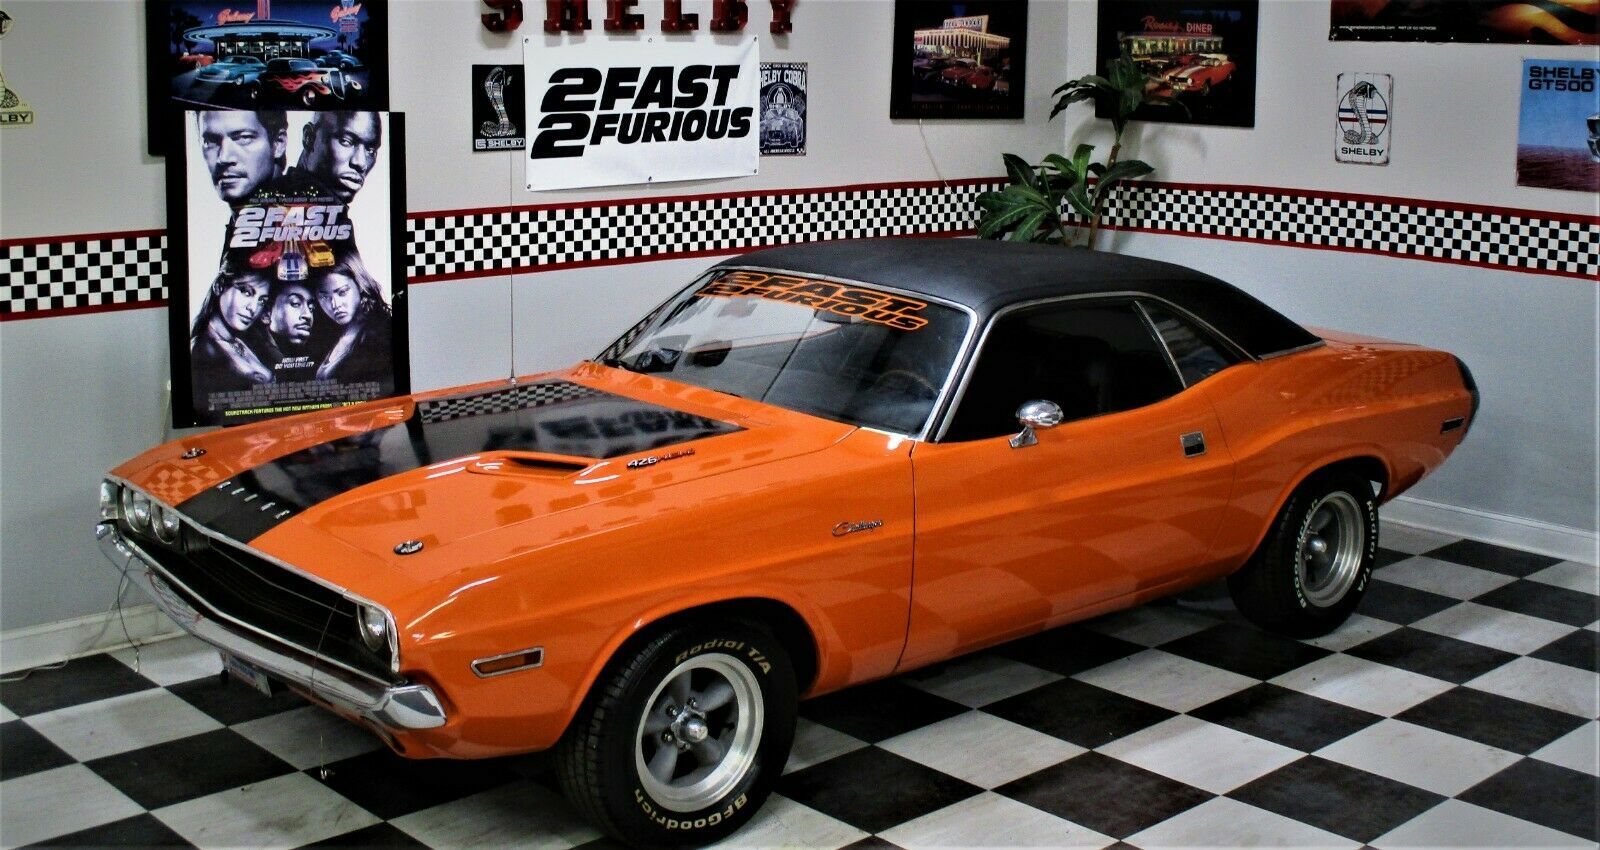 1970 Dodge Challenger Fast Furious | vlr.eng.br